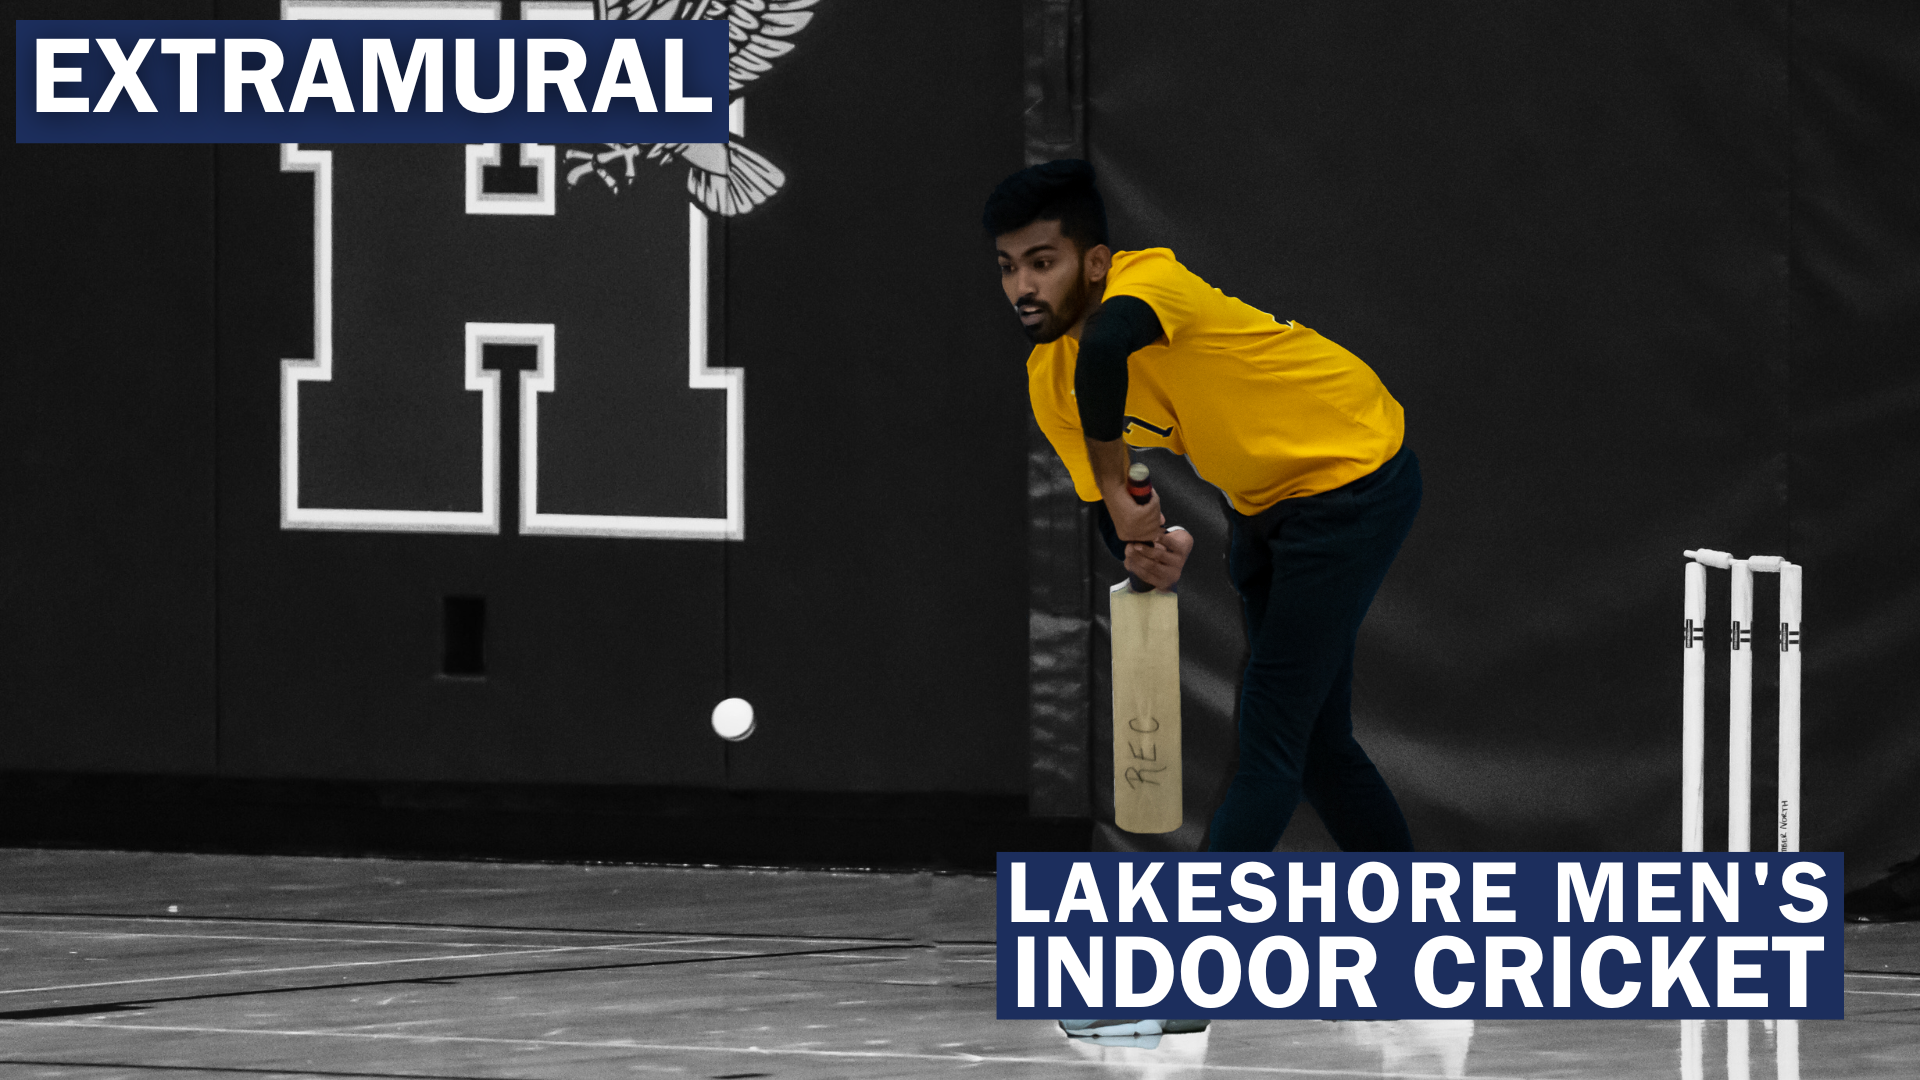 Extramural Lakeshore Men's Indoor Cricket